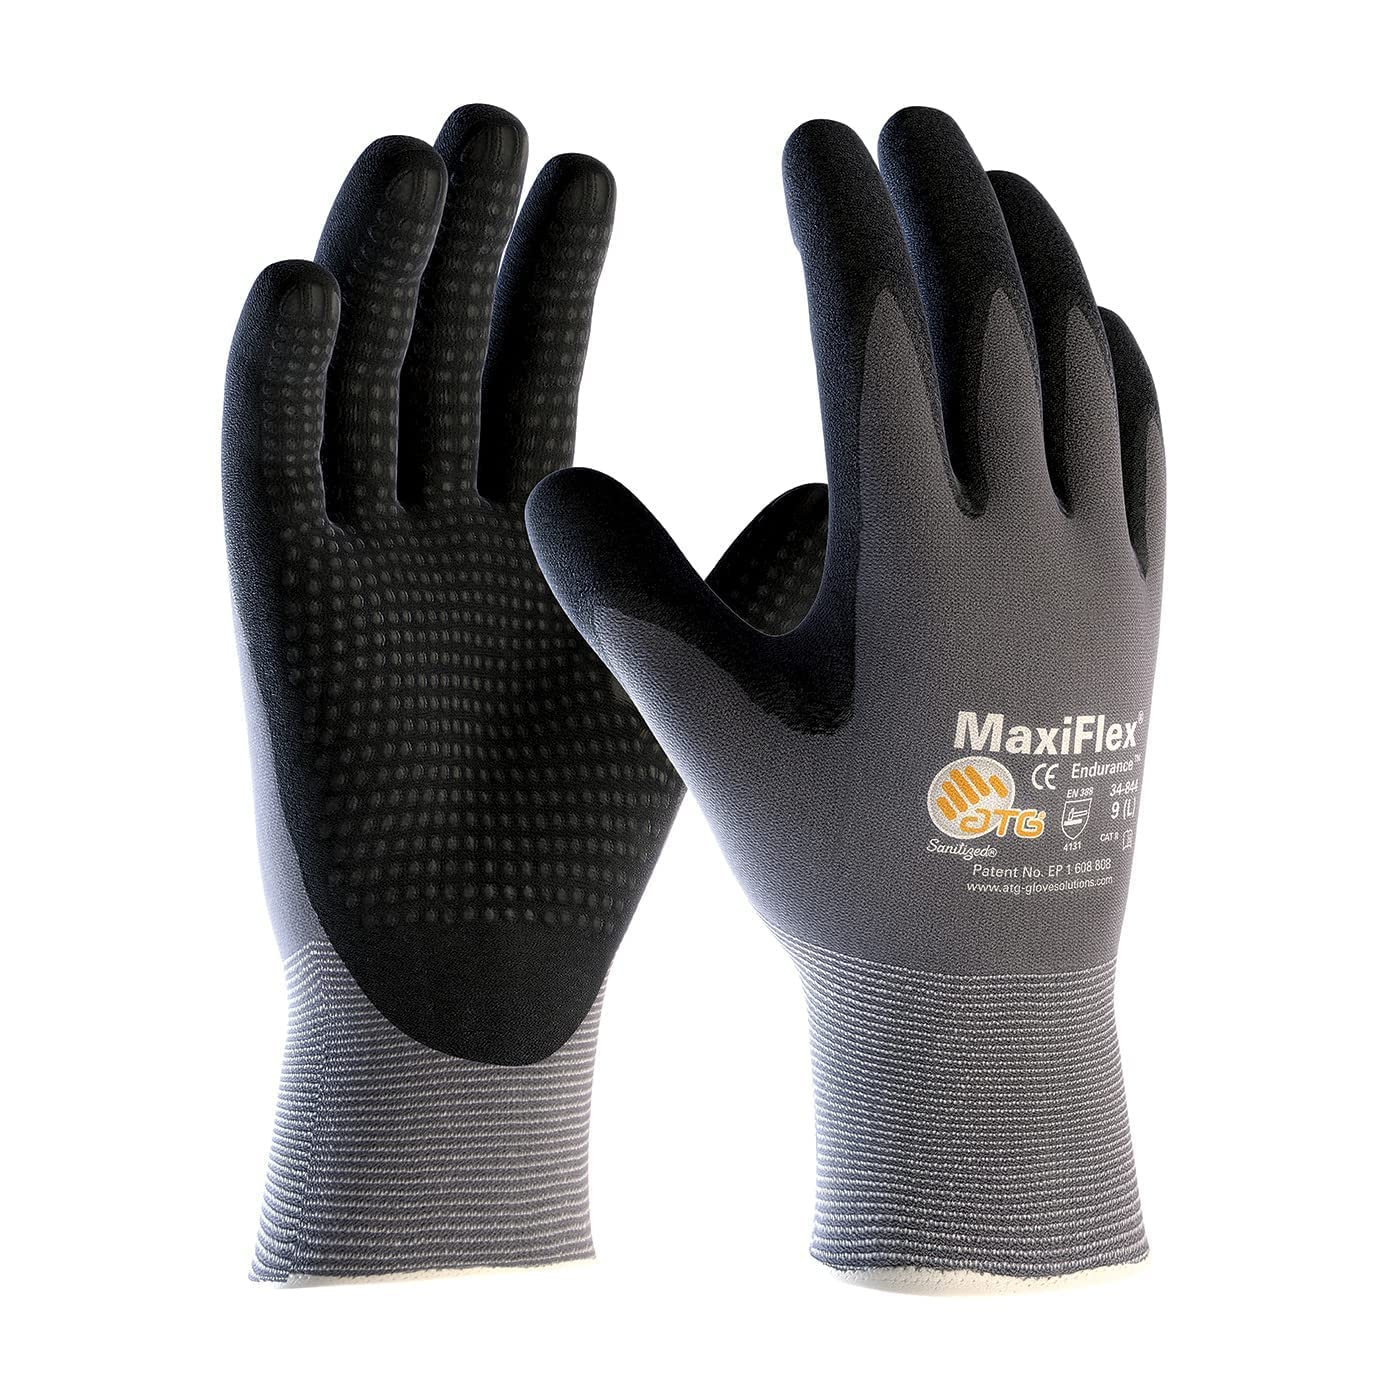 ATG Lot de 3 gants de travail en nylon tricoté sans couture MaxiFlex Endurance 34-844 avec poignée enduite de nitrile sur la paume et les doigts